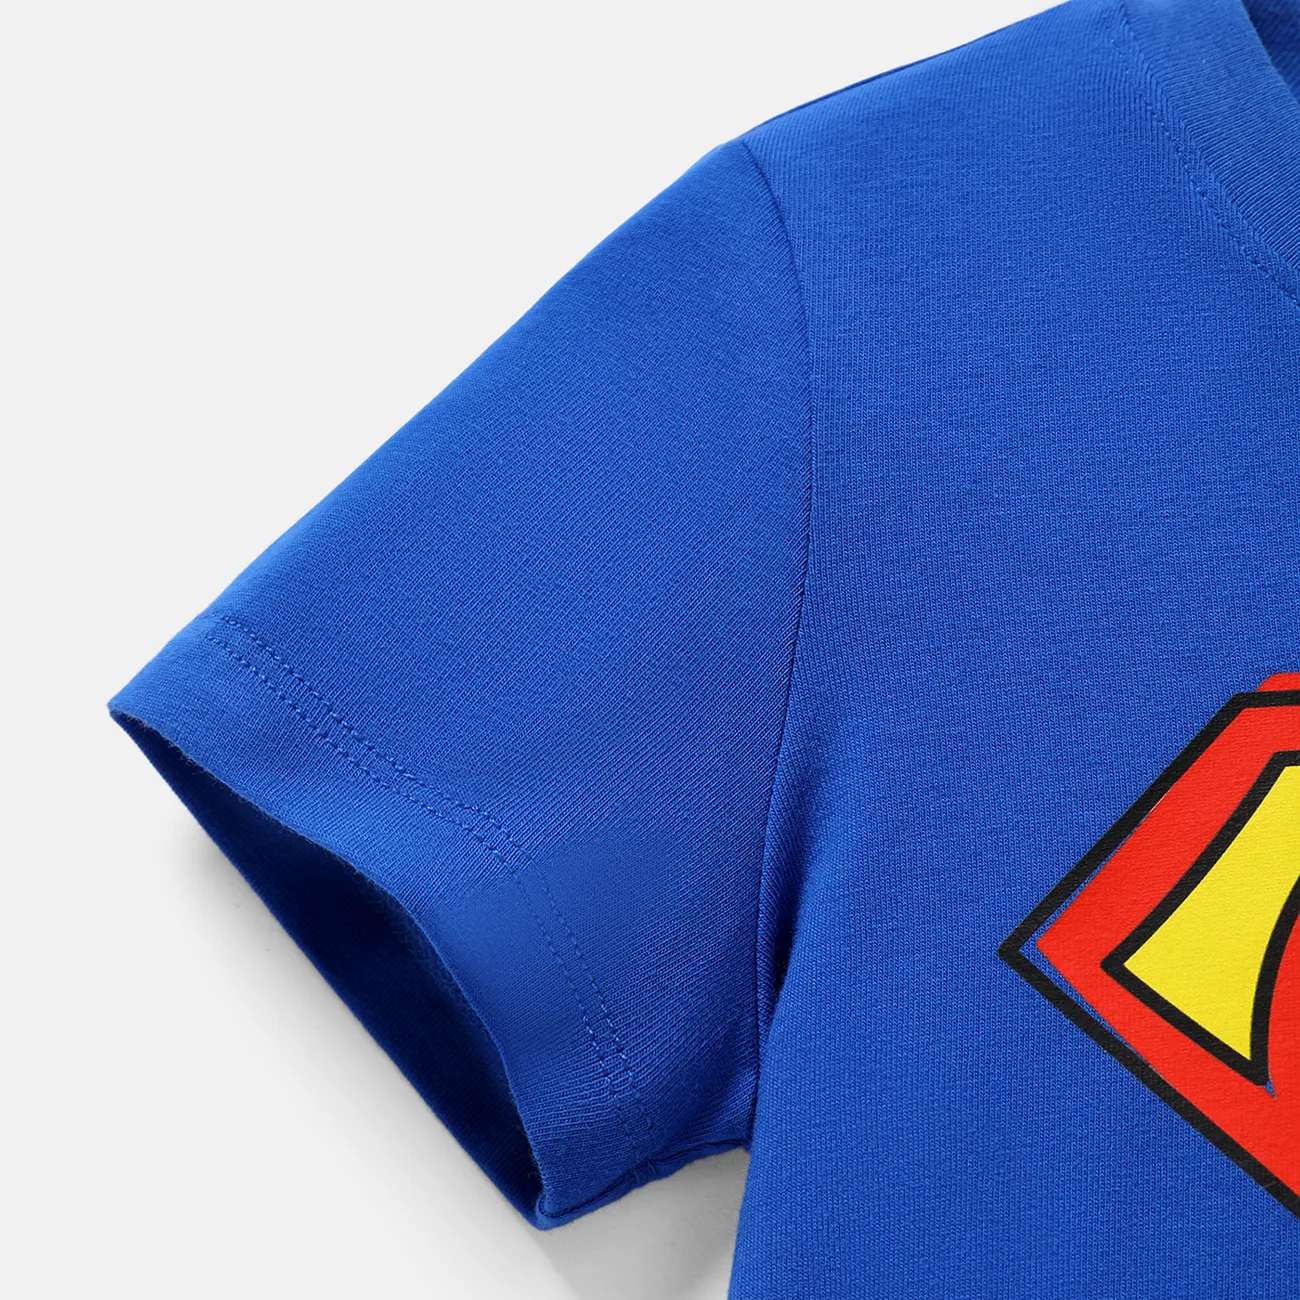 Justice League Enfant en bas âge Unisexe Tendance Manches longues T-Shirt Bleu big image 1